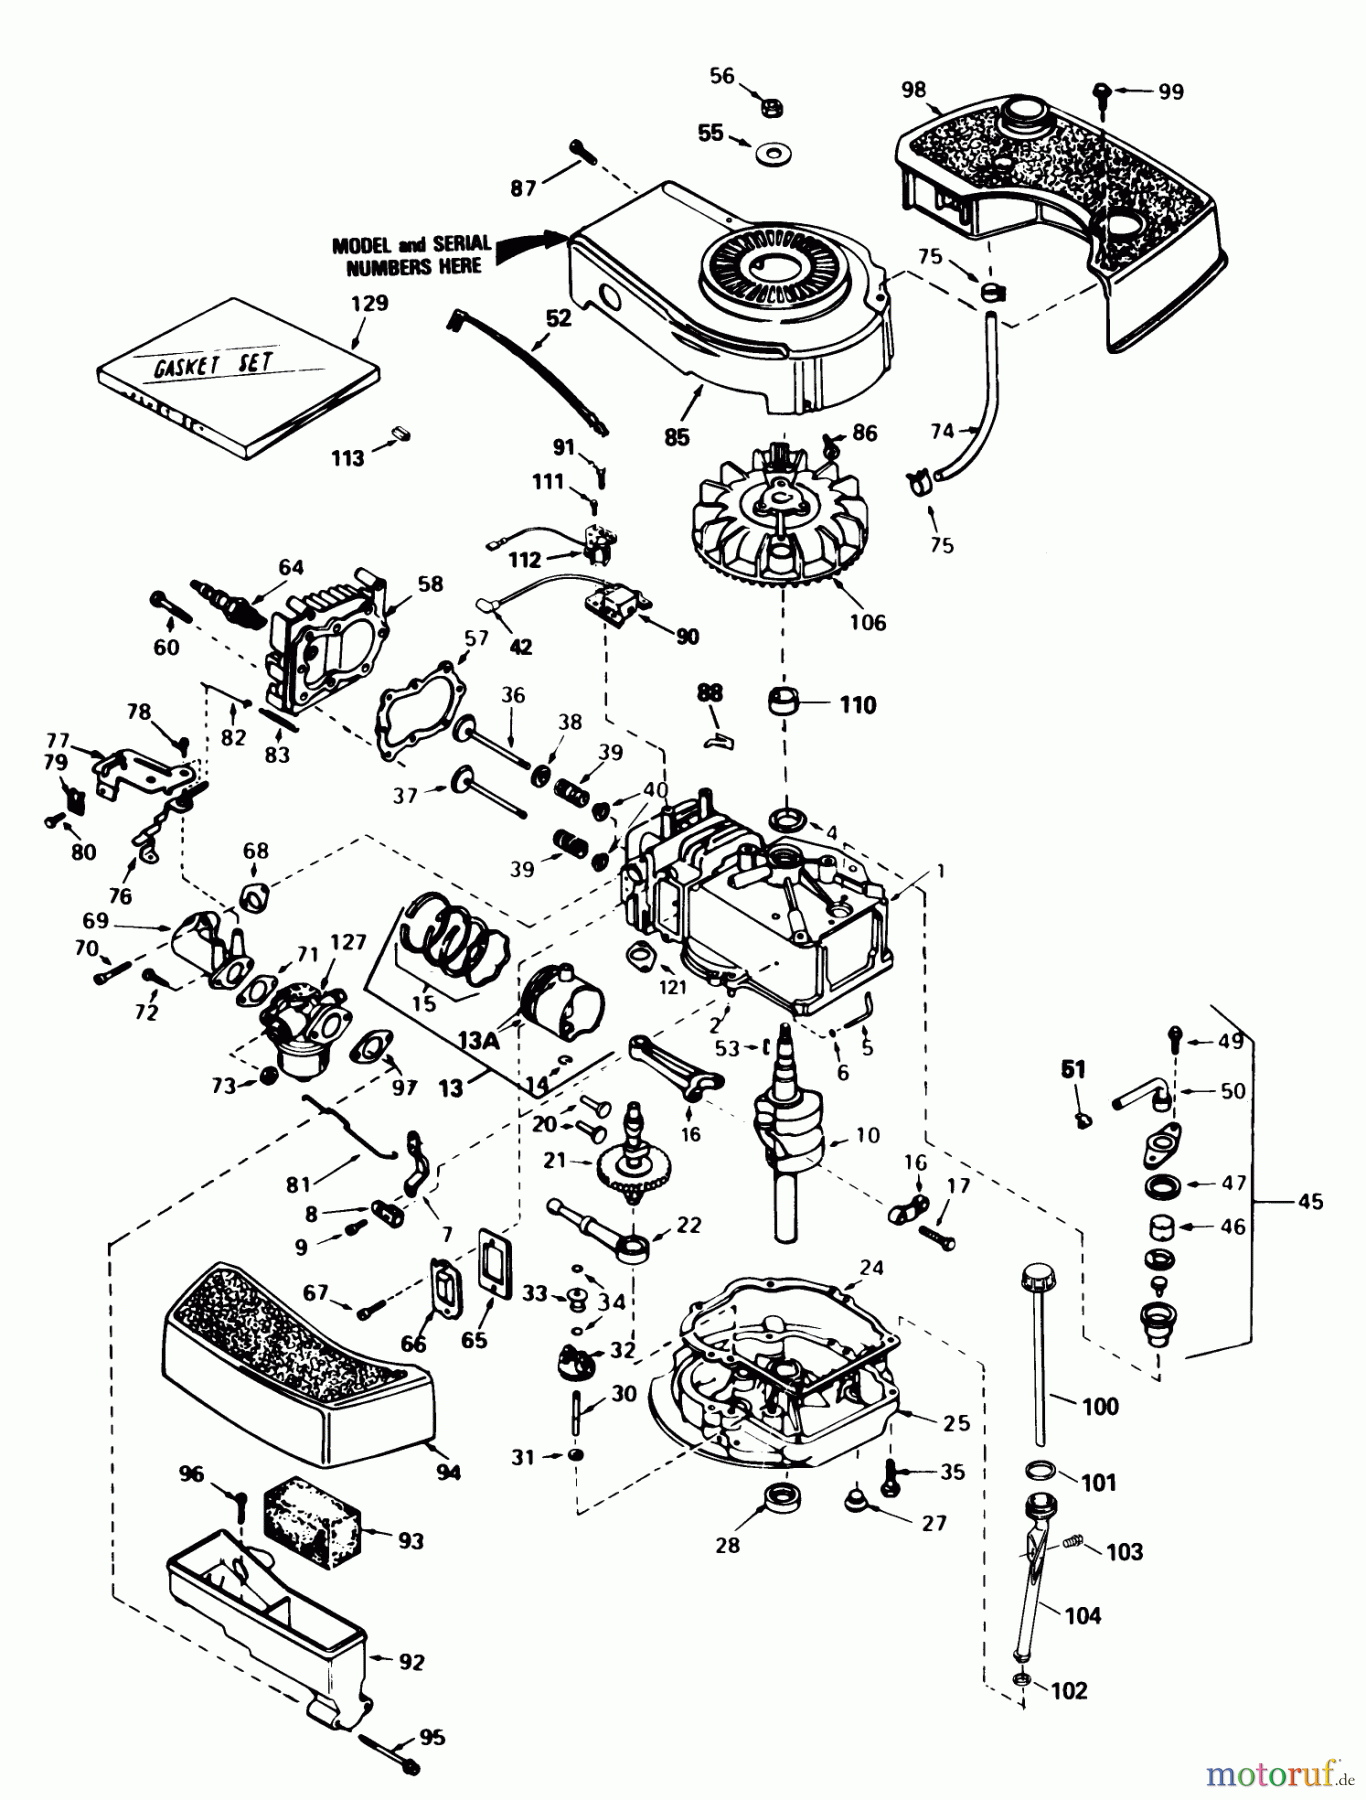  Toro Neu Mowers, Walk-Behind Seite 1 20574 - Toro Lawnmower, 1988 (8000001-8999999) ENGINE TECUMSEH MODEL NO. TNT 100-10097F